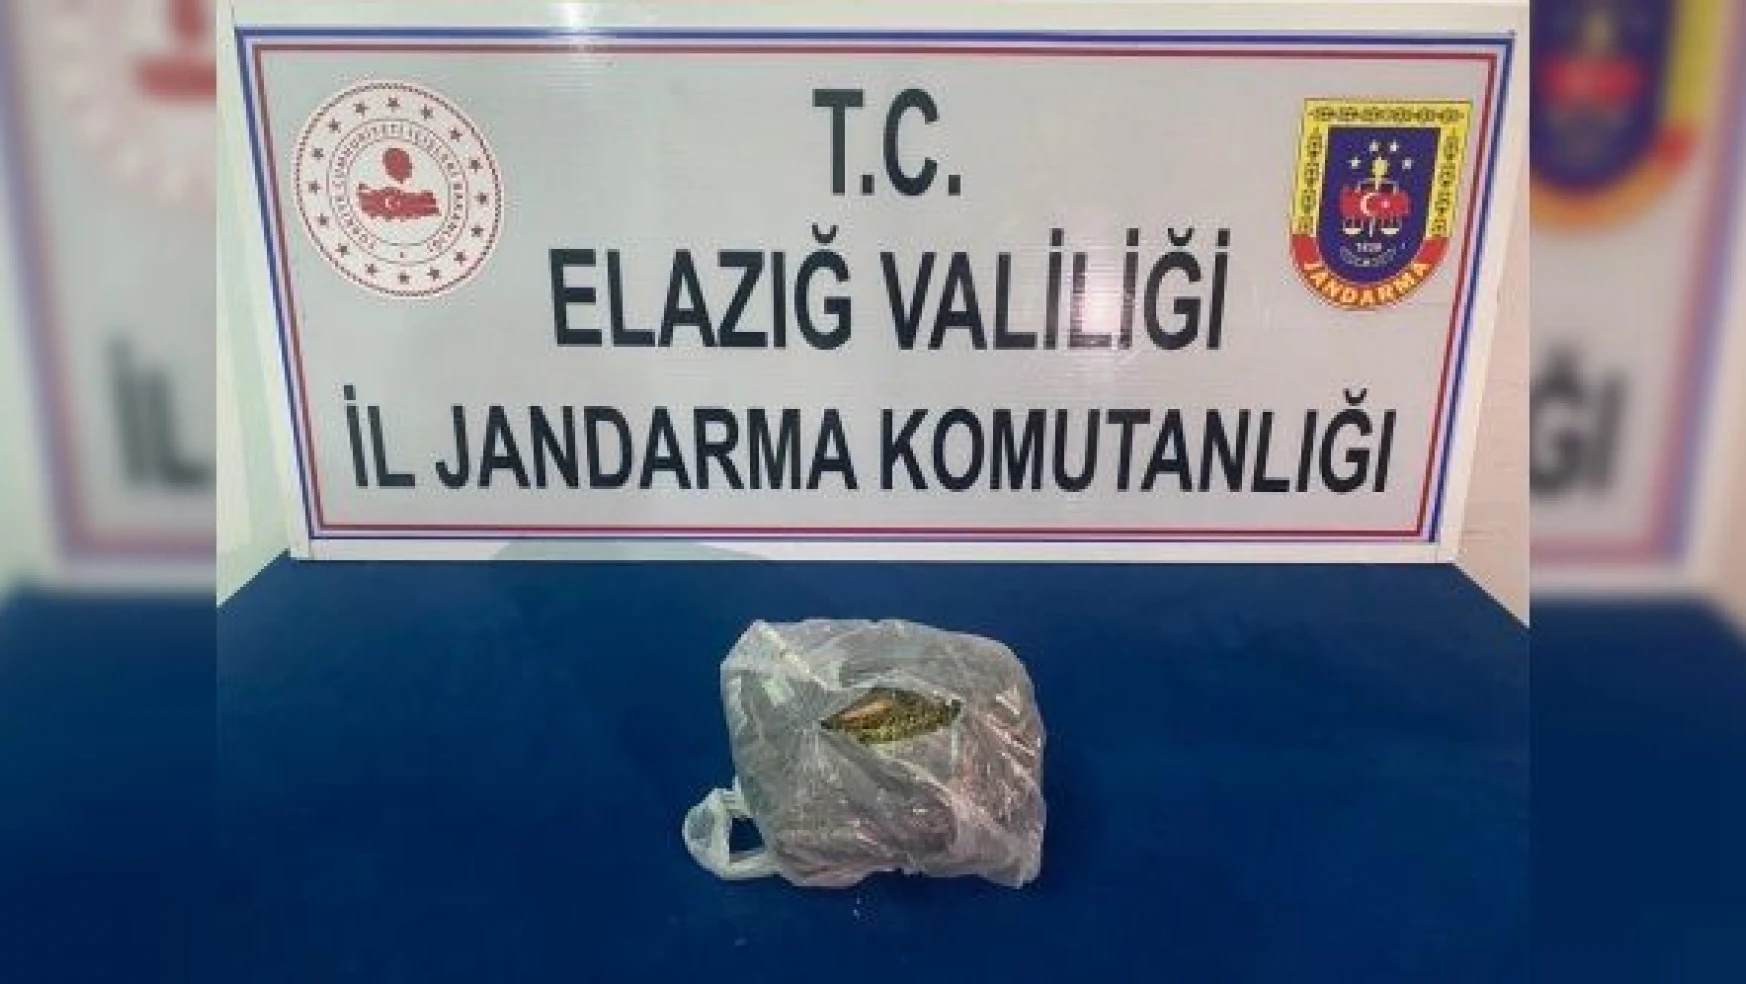 Elazığ'da uyuşturucu operasyonu: 2 kişi tutuklandı